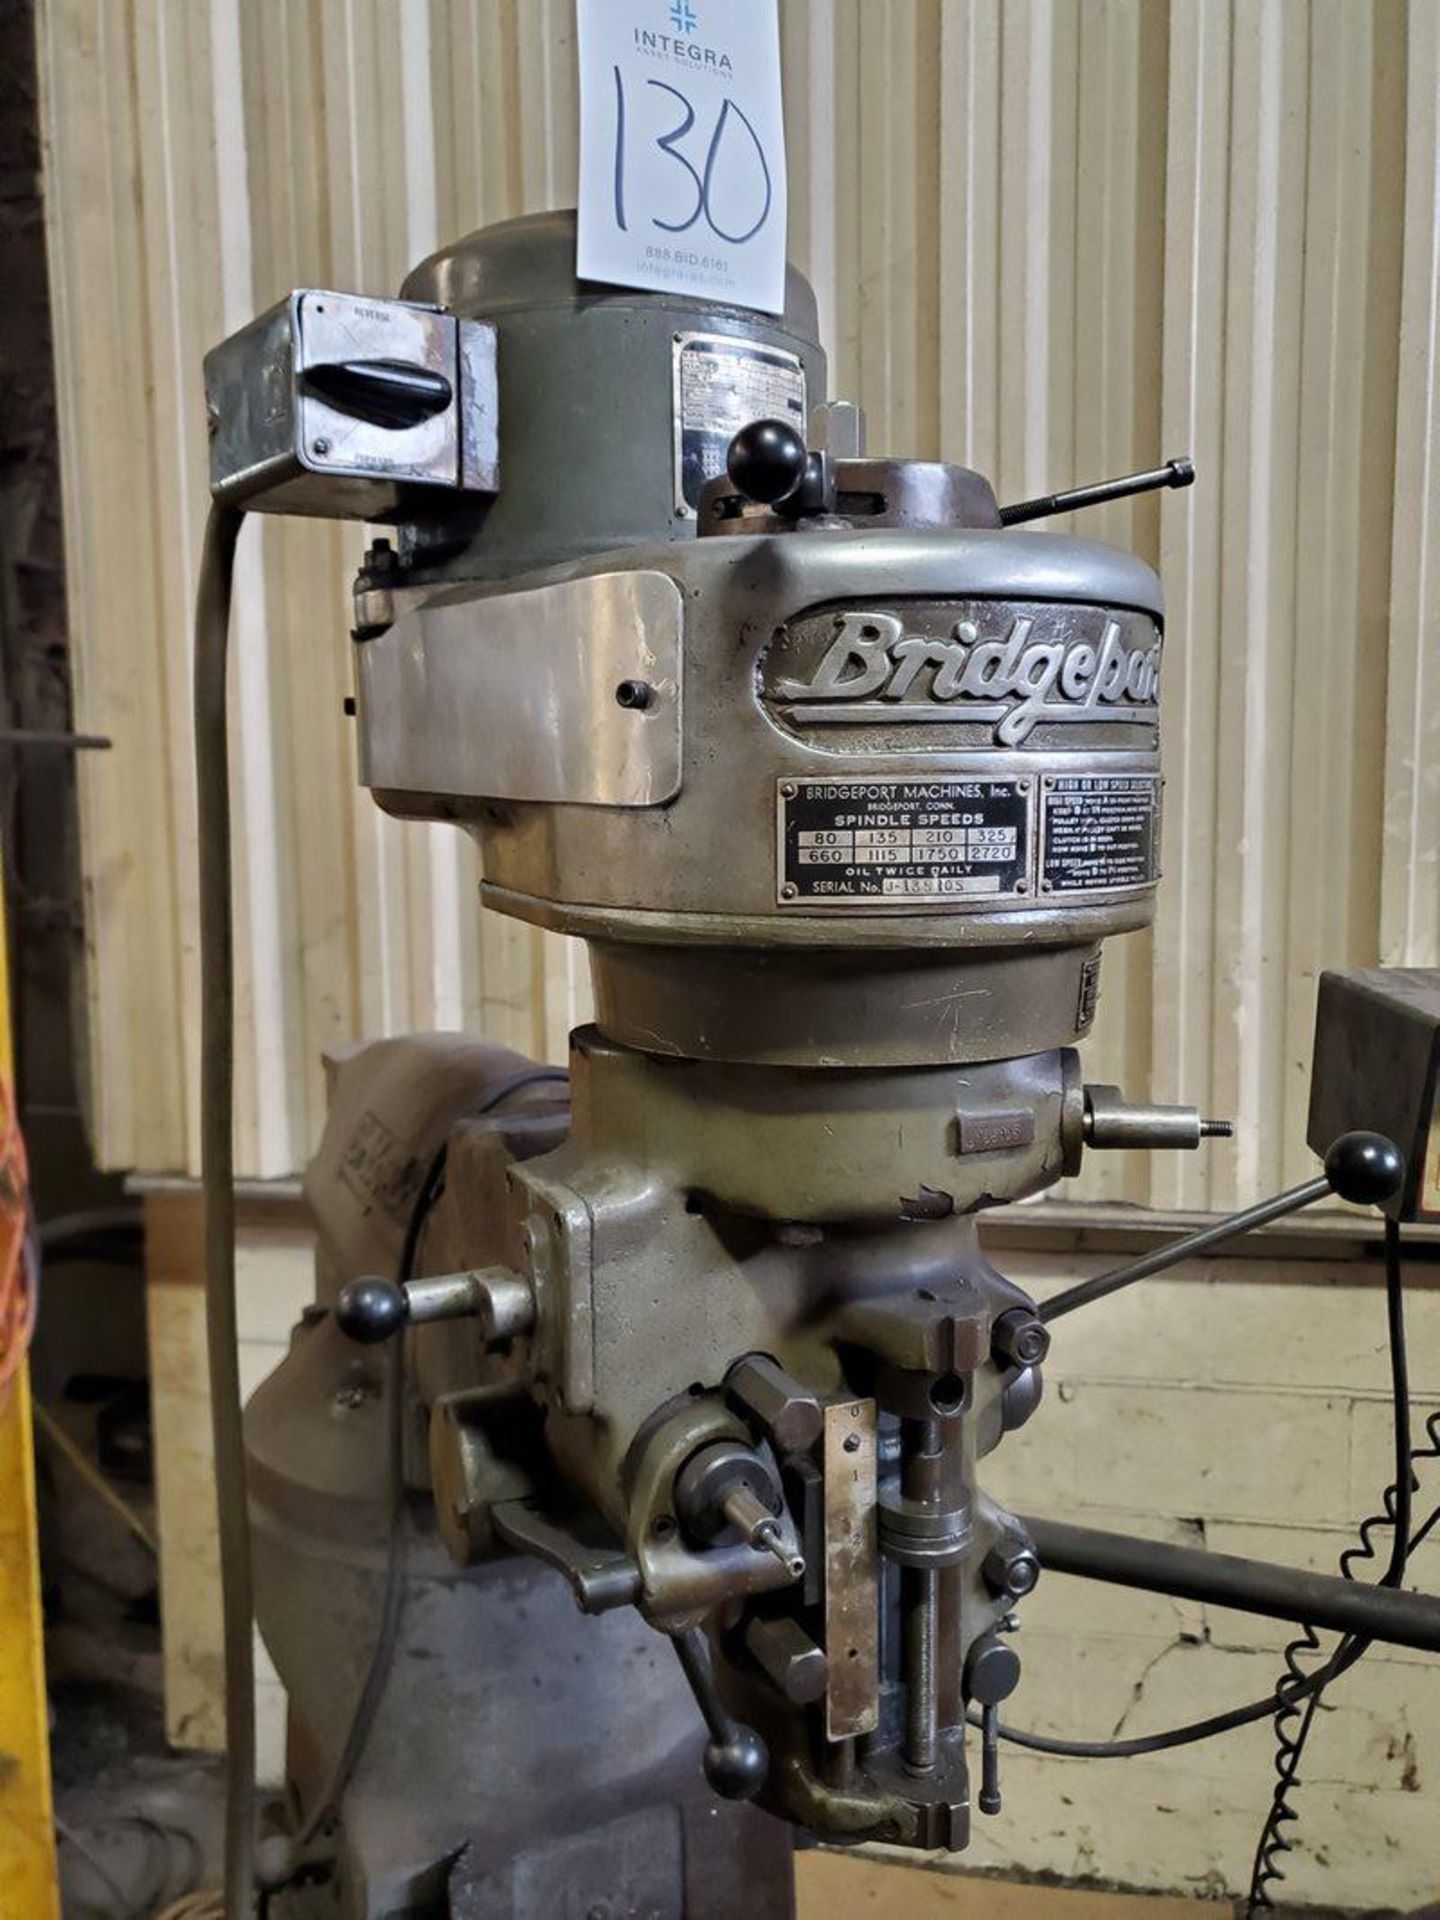 Bridgeport 1 hp Vertical Milling Machine, S/N 132220 - Image 4 of 5